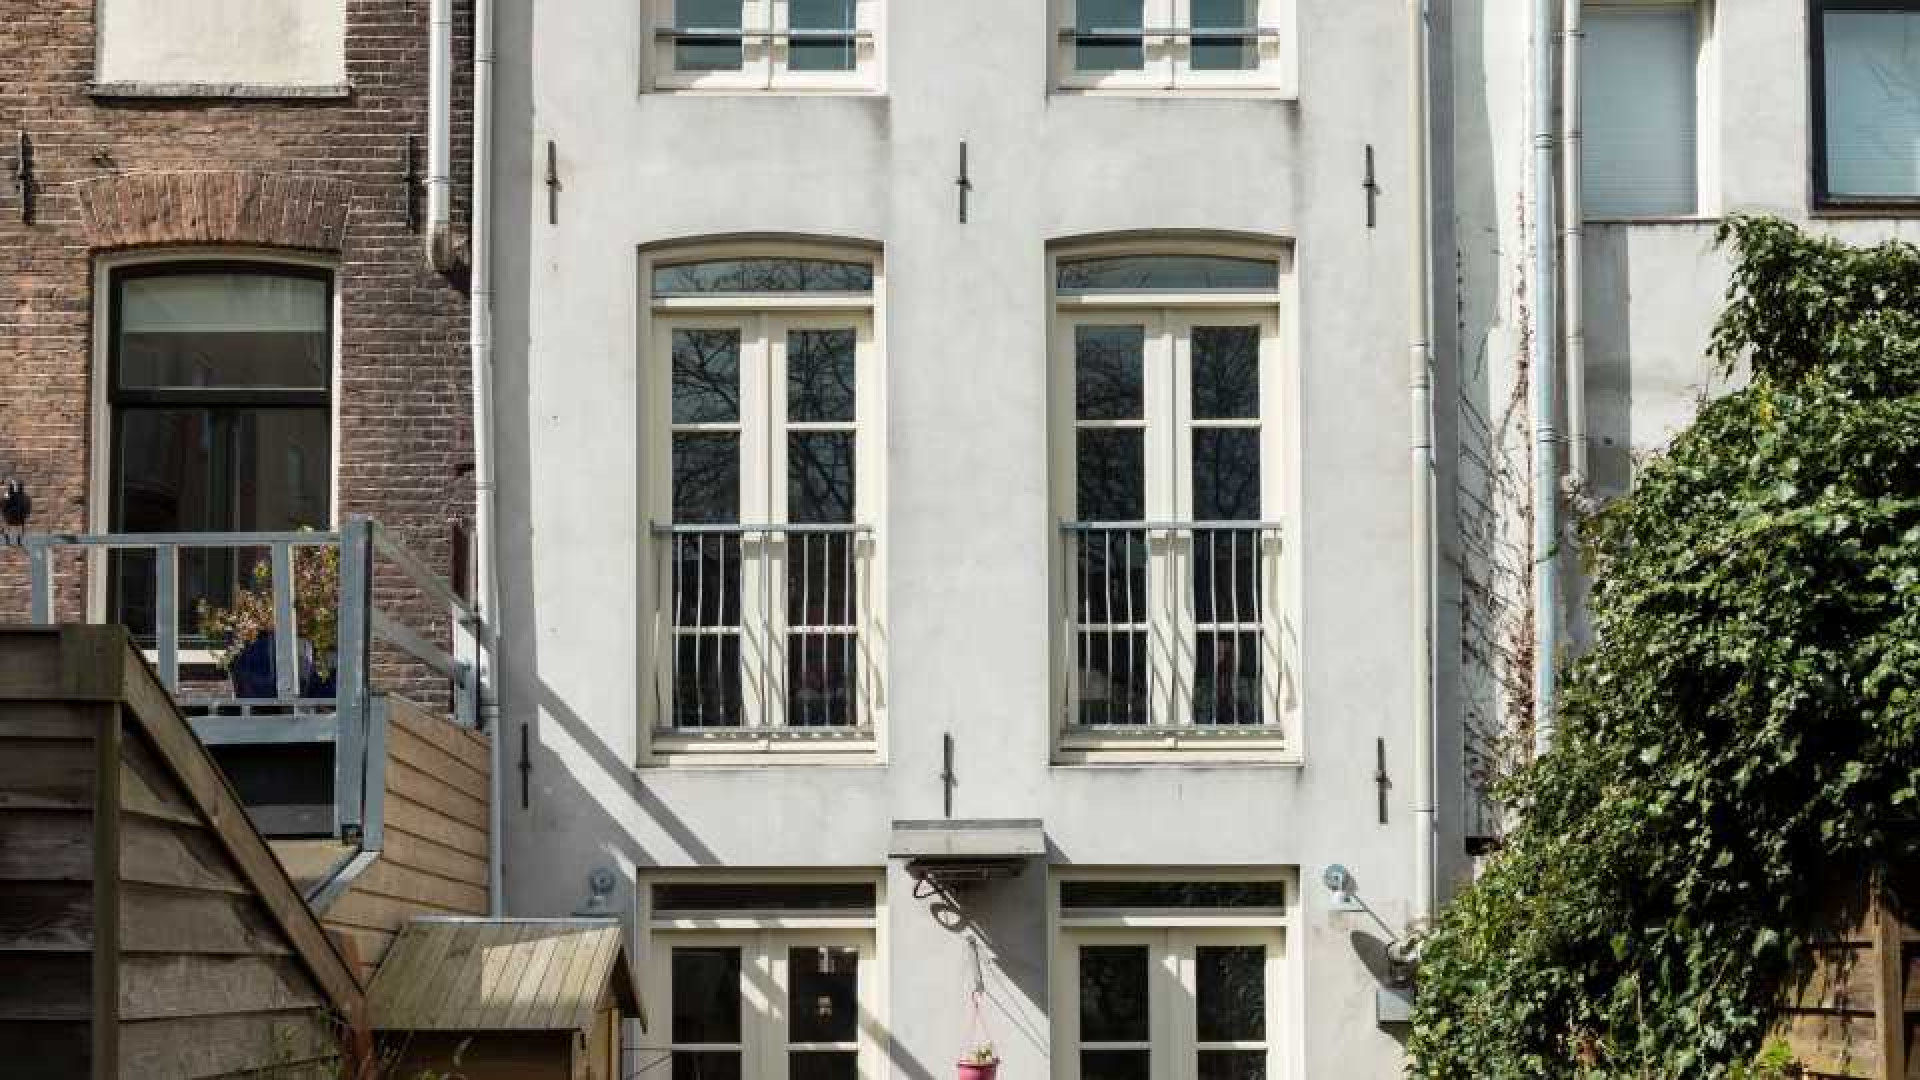 Rob Oudkerk zet scheidingshuis met korting weer in de verkoop. Zie foto's